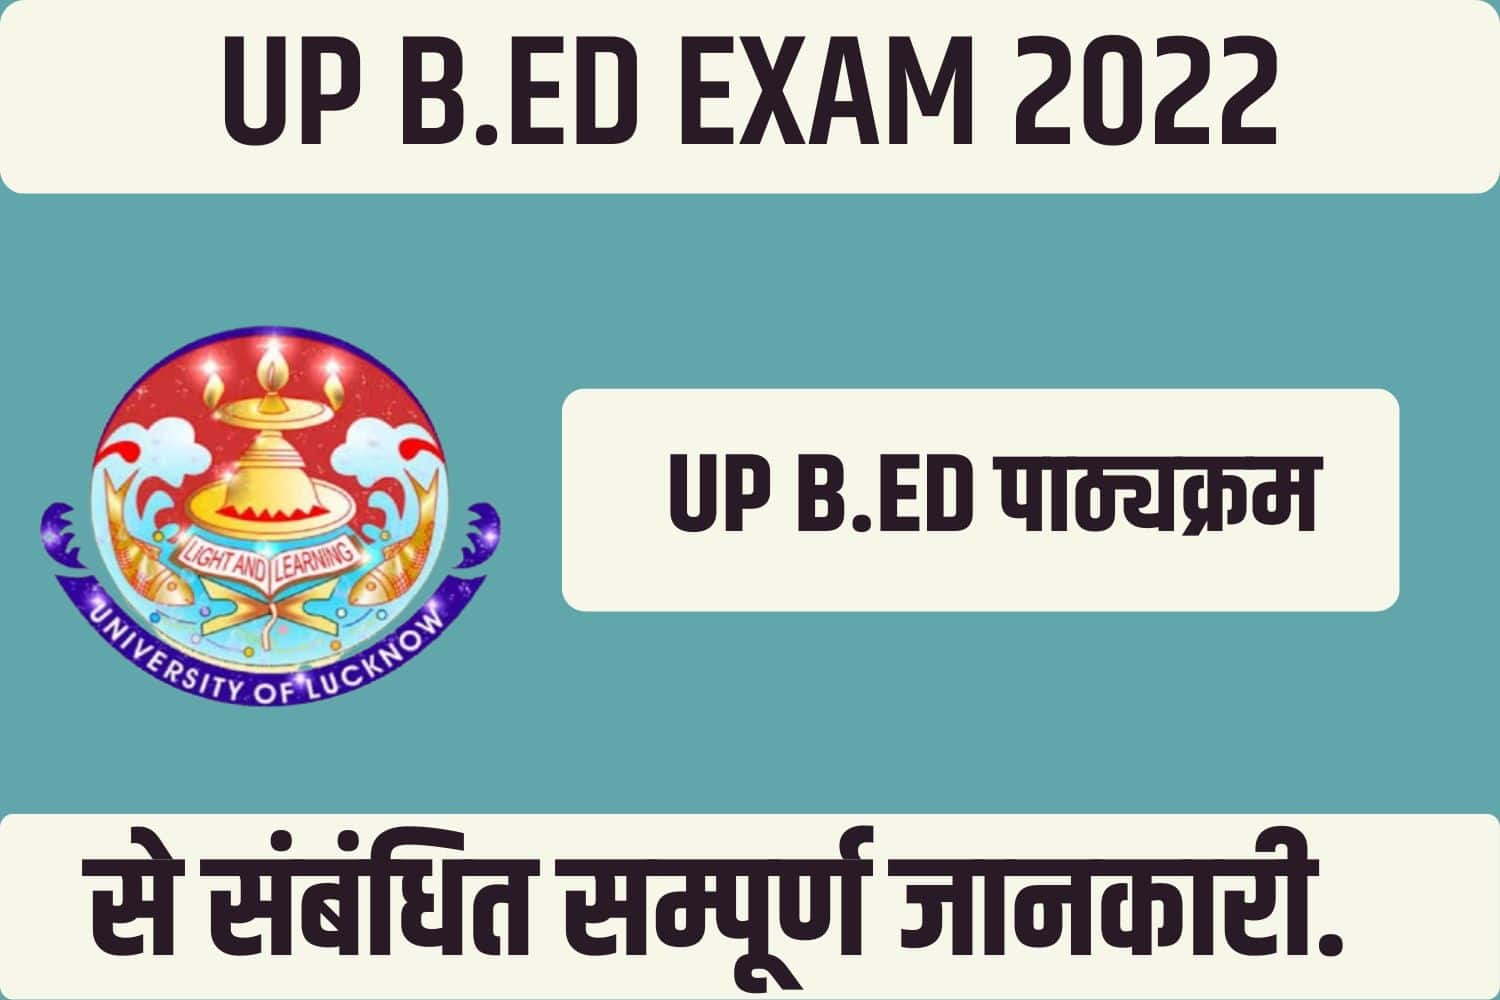 UP B.Ed Syllabus 2022 In Hindi | यूपी बीएड सिलेबस हिंदी में